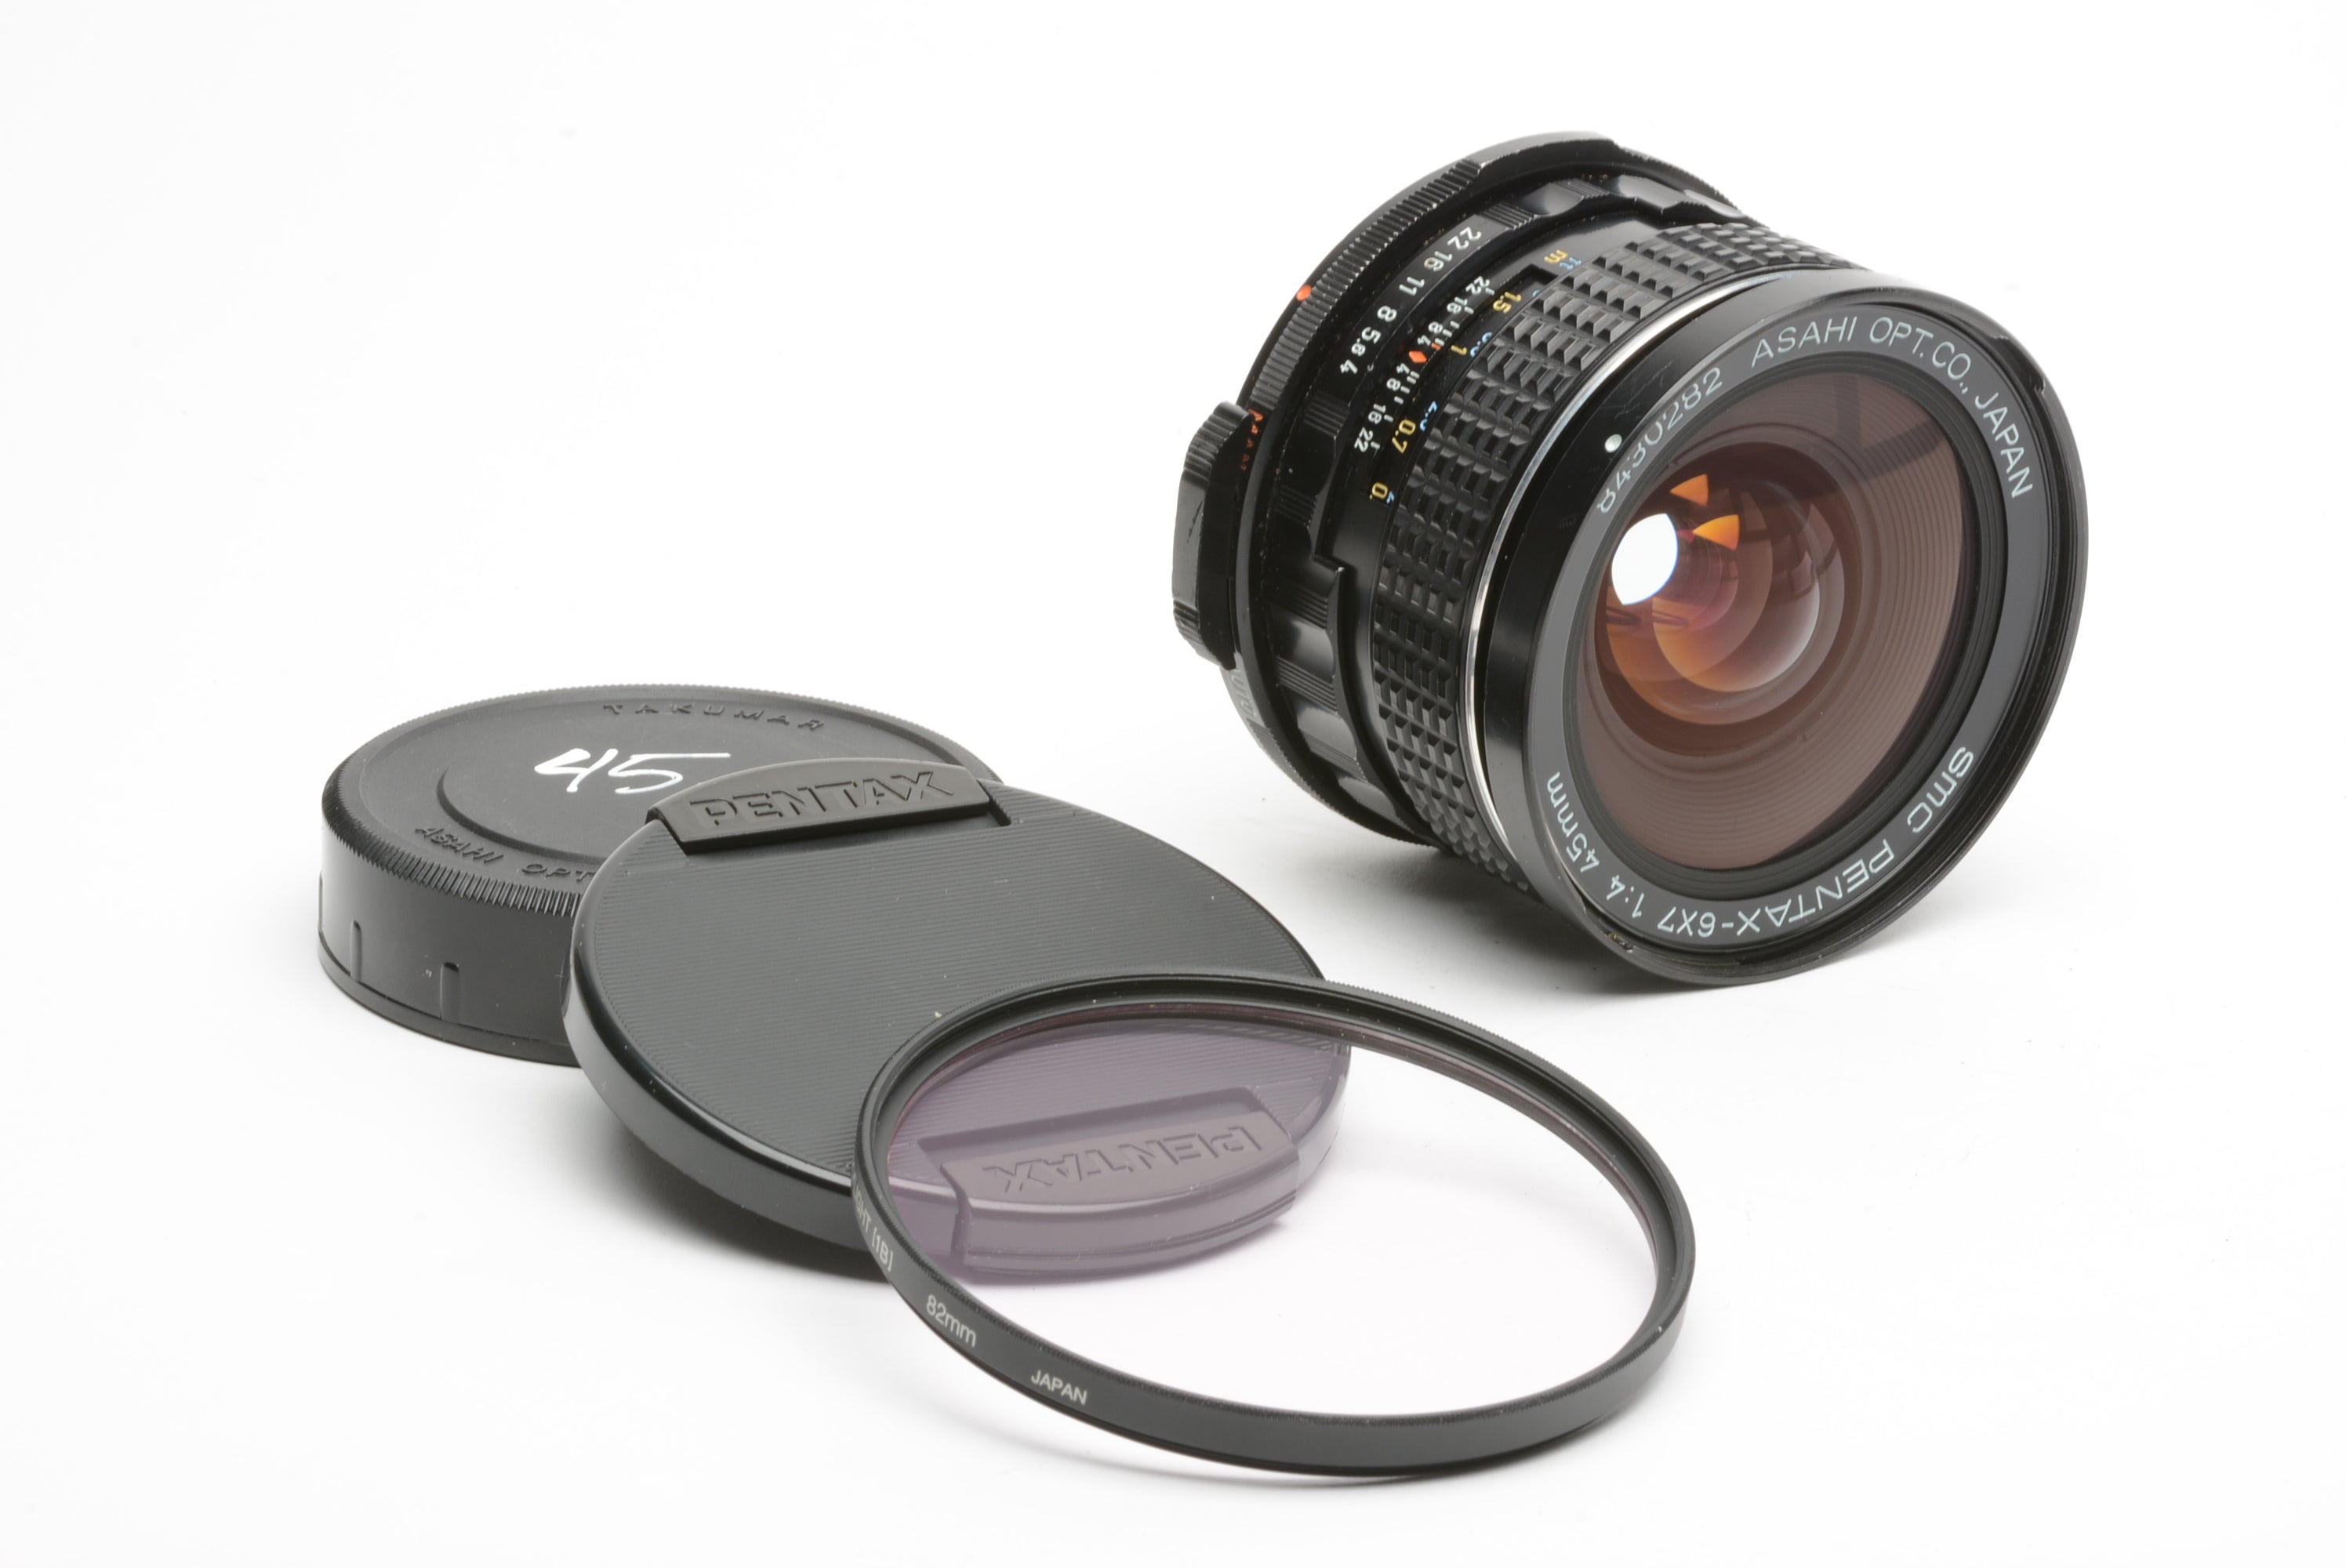 Pentax SMC 45mm f4 lens for Pentax 67, caps, Sky, sharp